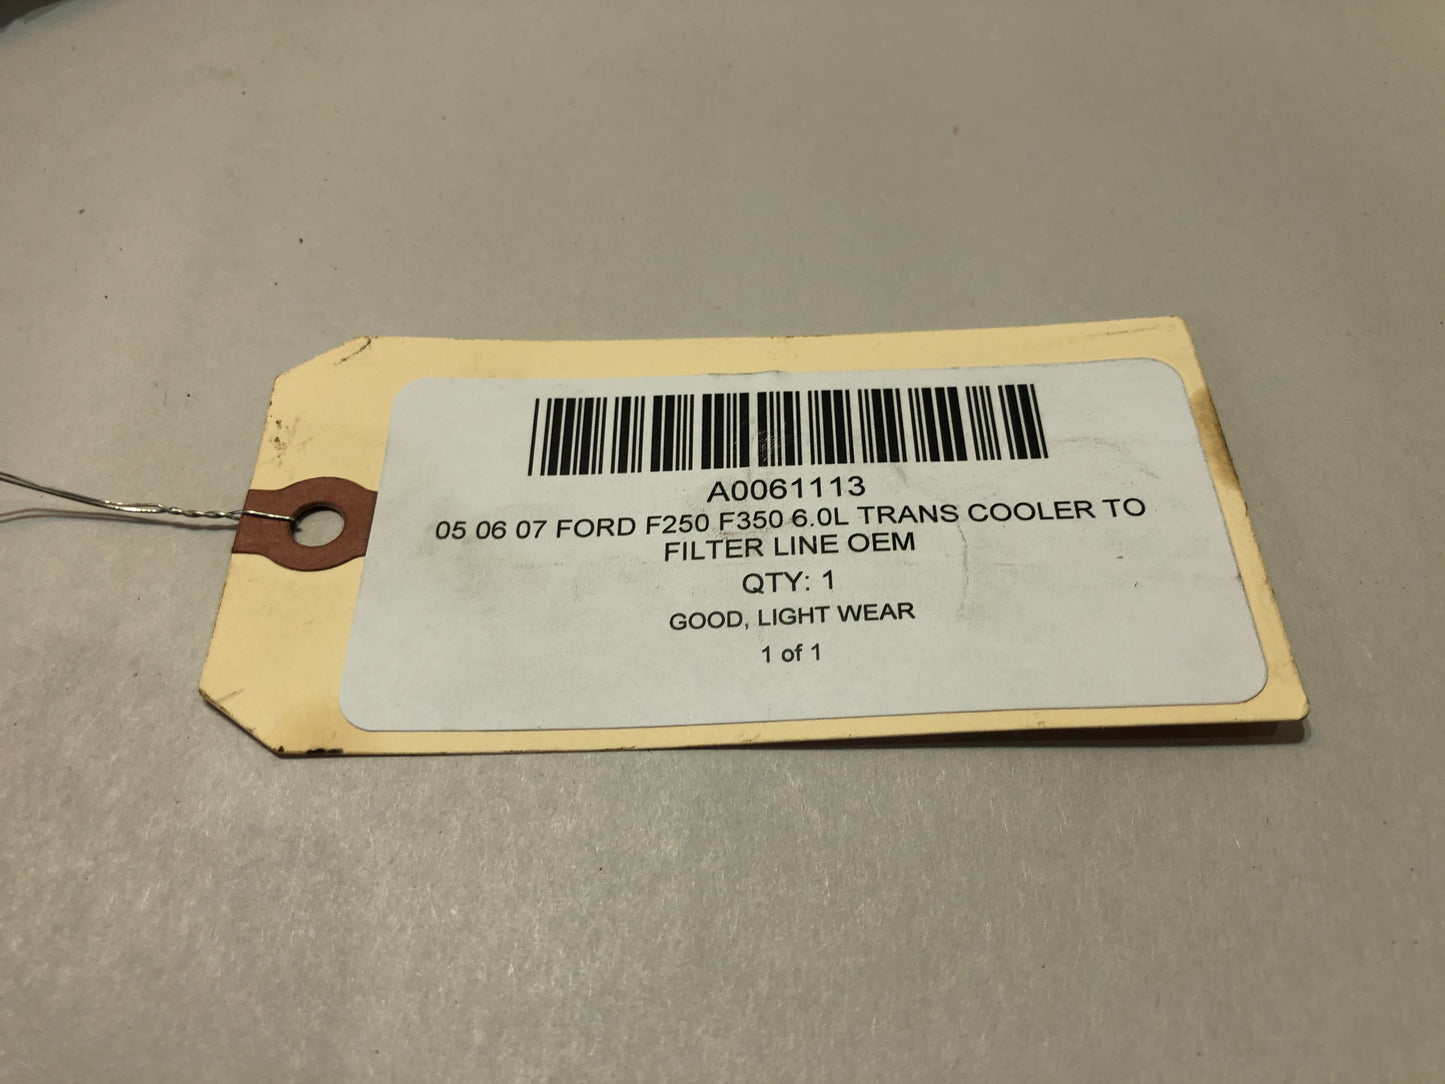 05 06 07 Ford F250 F350 6.0L Trans Cooler To Filter Line OEM